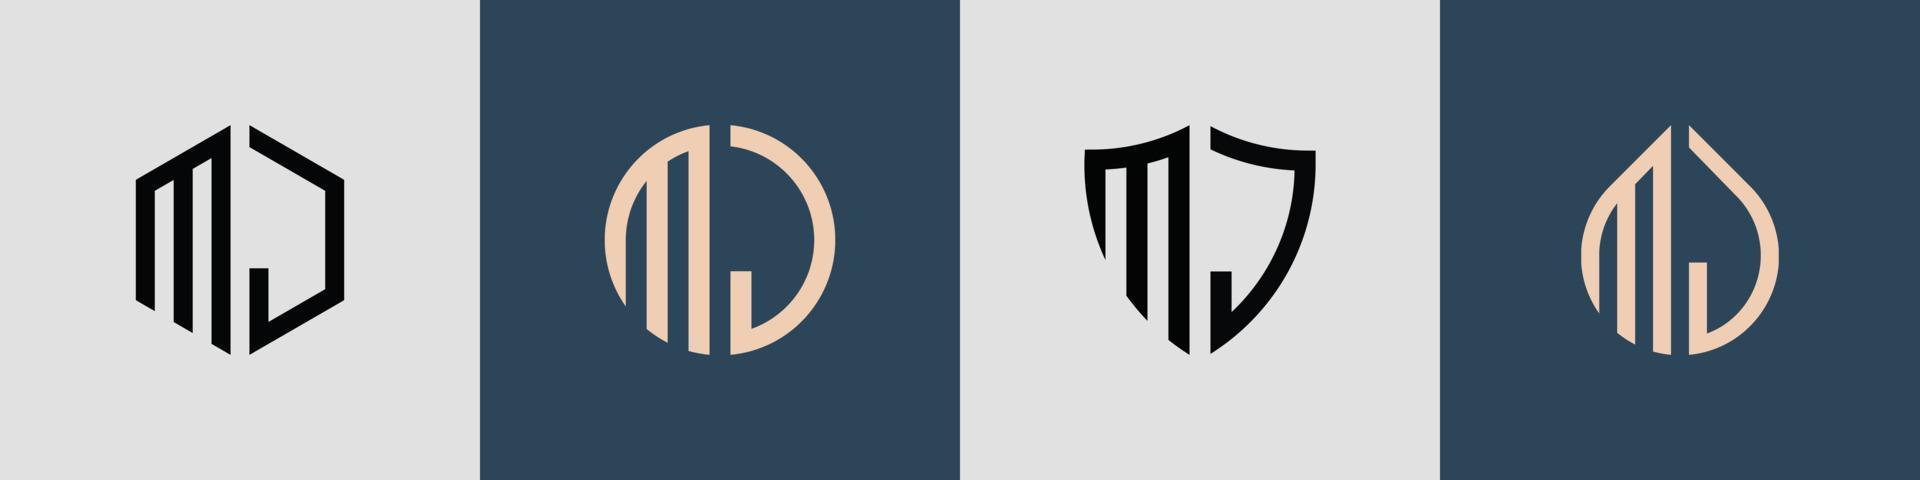 kreative einfache anfangsbuchstaben mj logo designs paket. vektor